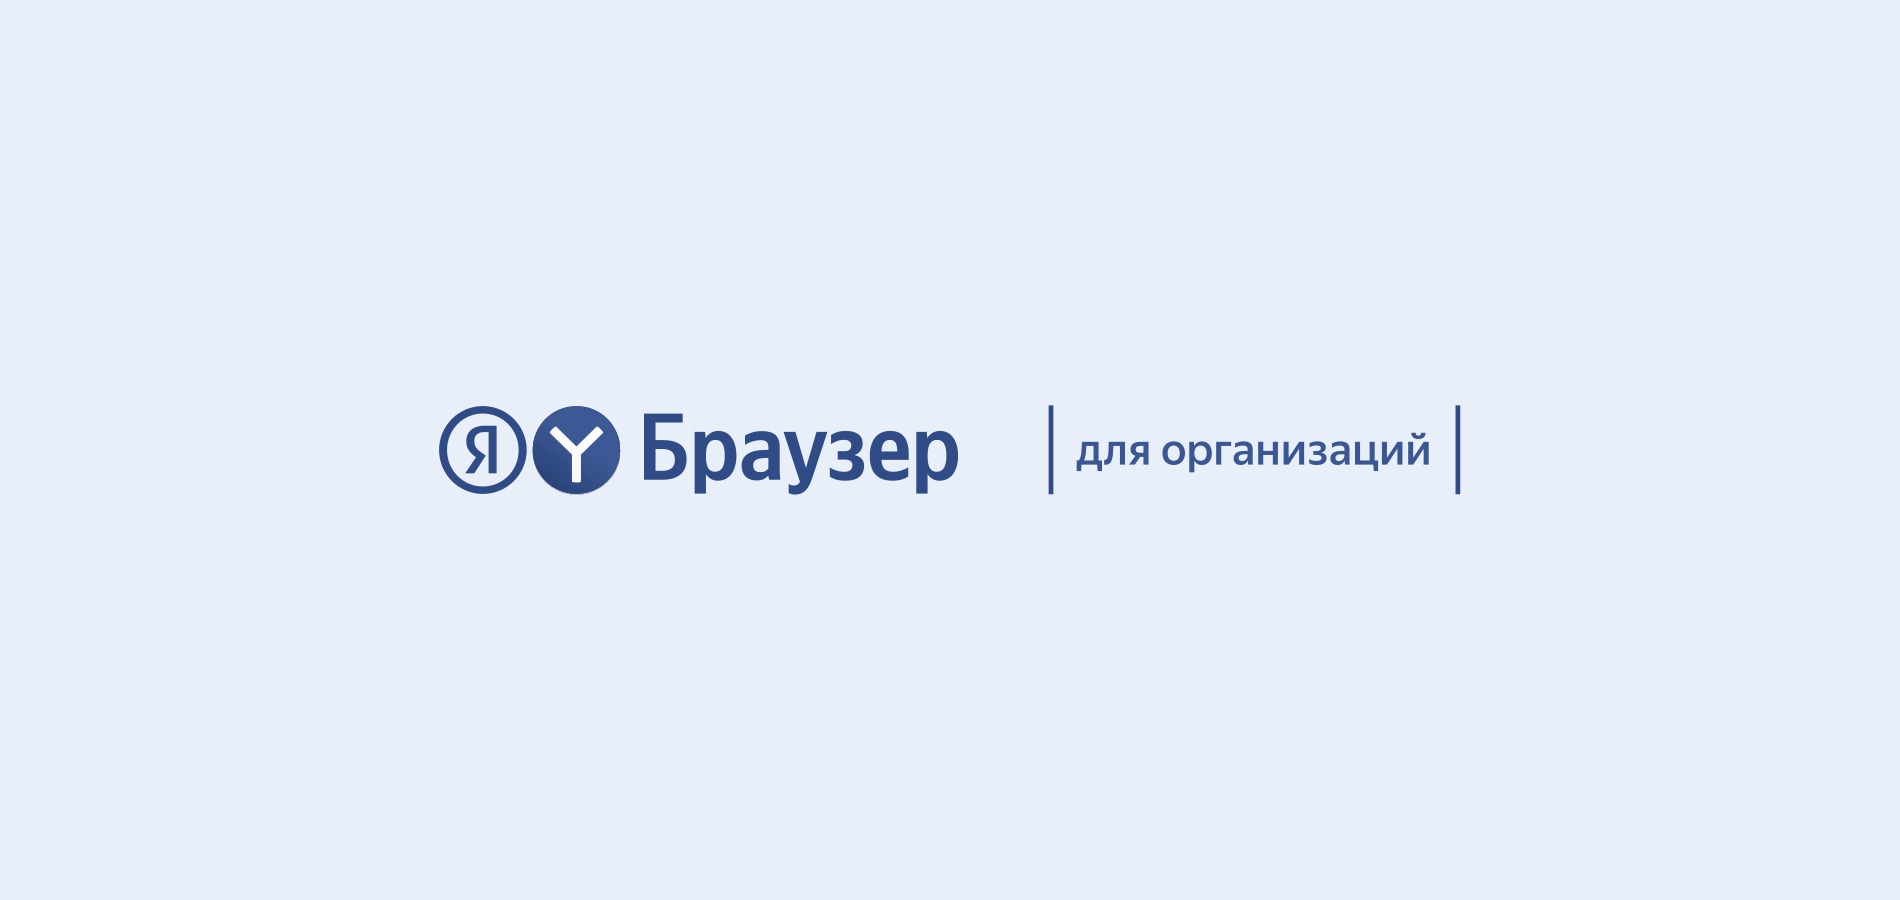 Яндекс выпустил расширенную версию Браузера для компаний